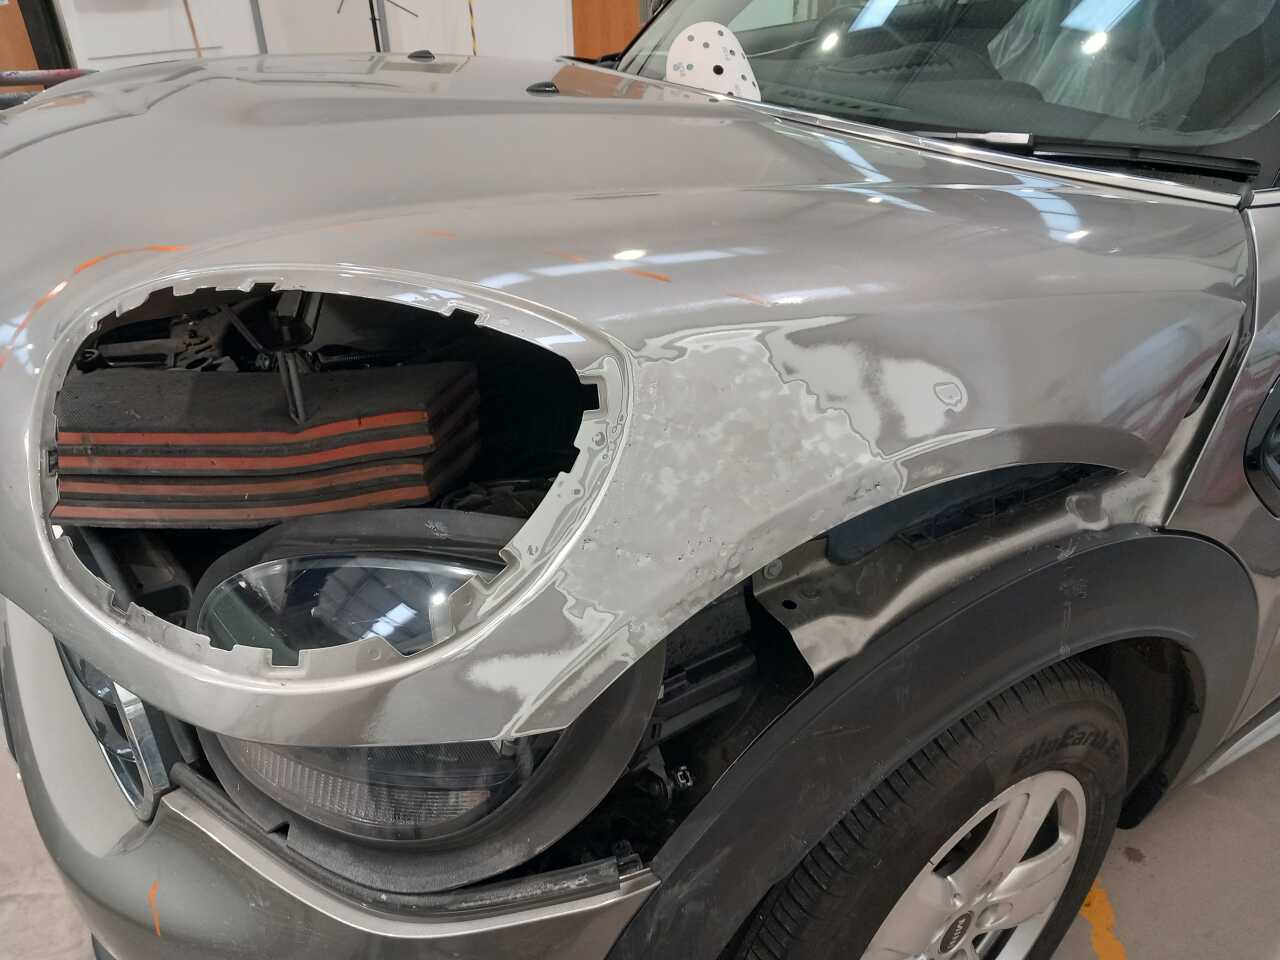 Strang car - during Halo repair